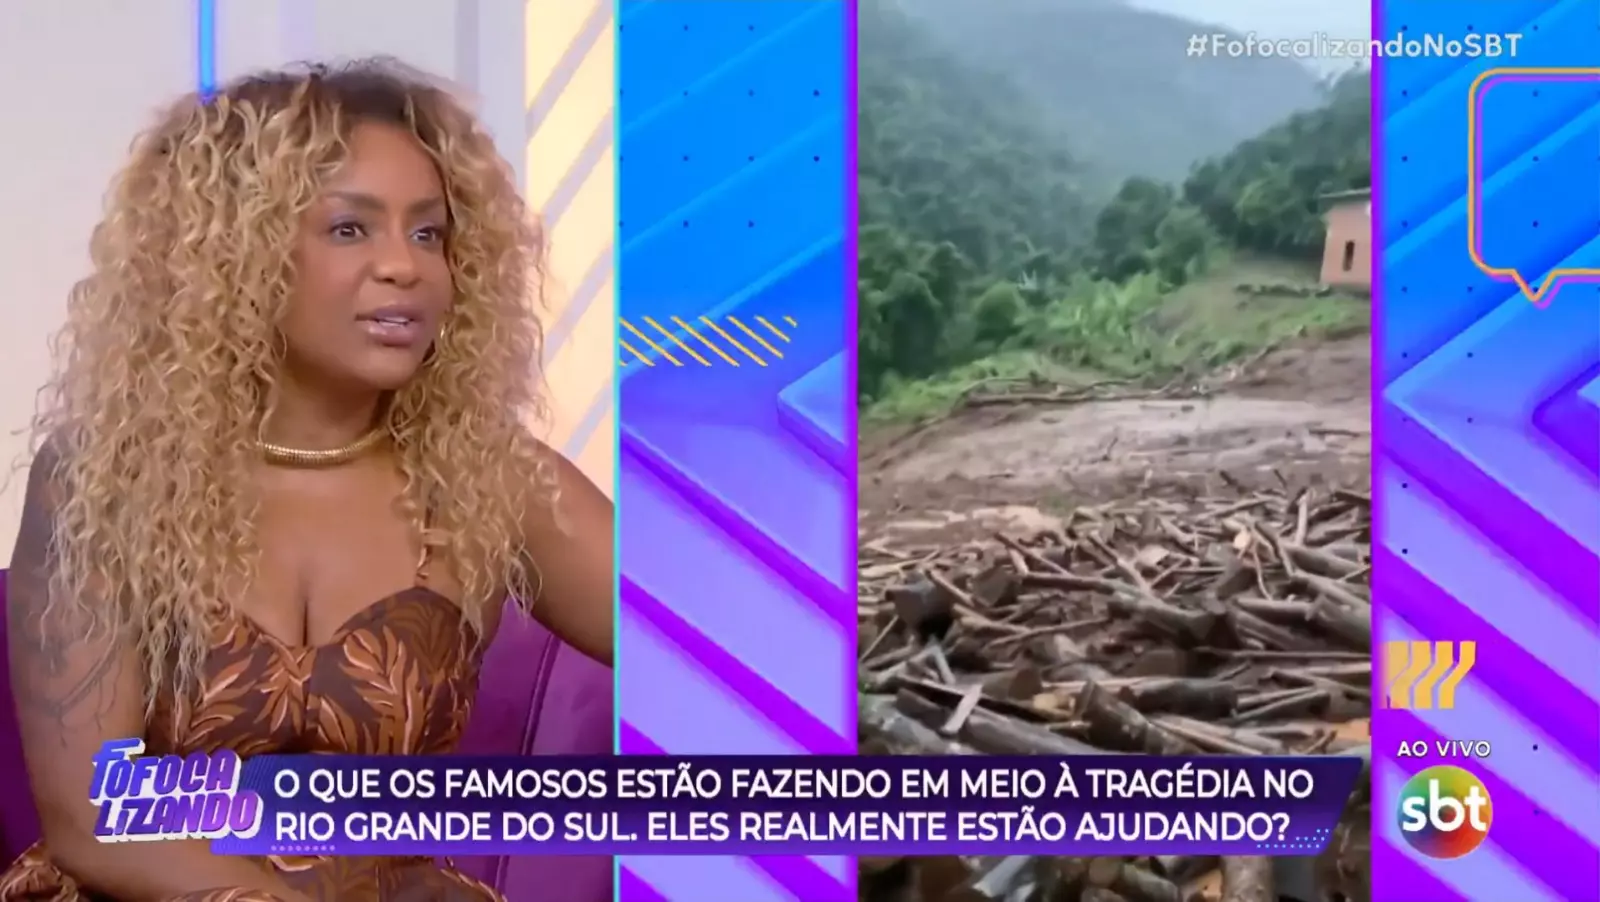 No Fofocalizando, Cariúcha faz desabafo e revela que parentes estão desaparecidos no Rio Grande do Sul - 1